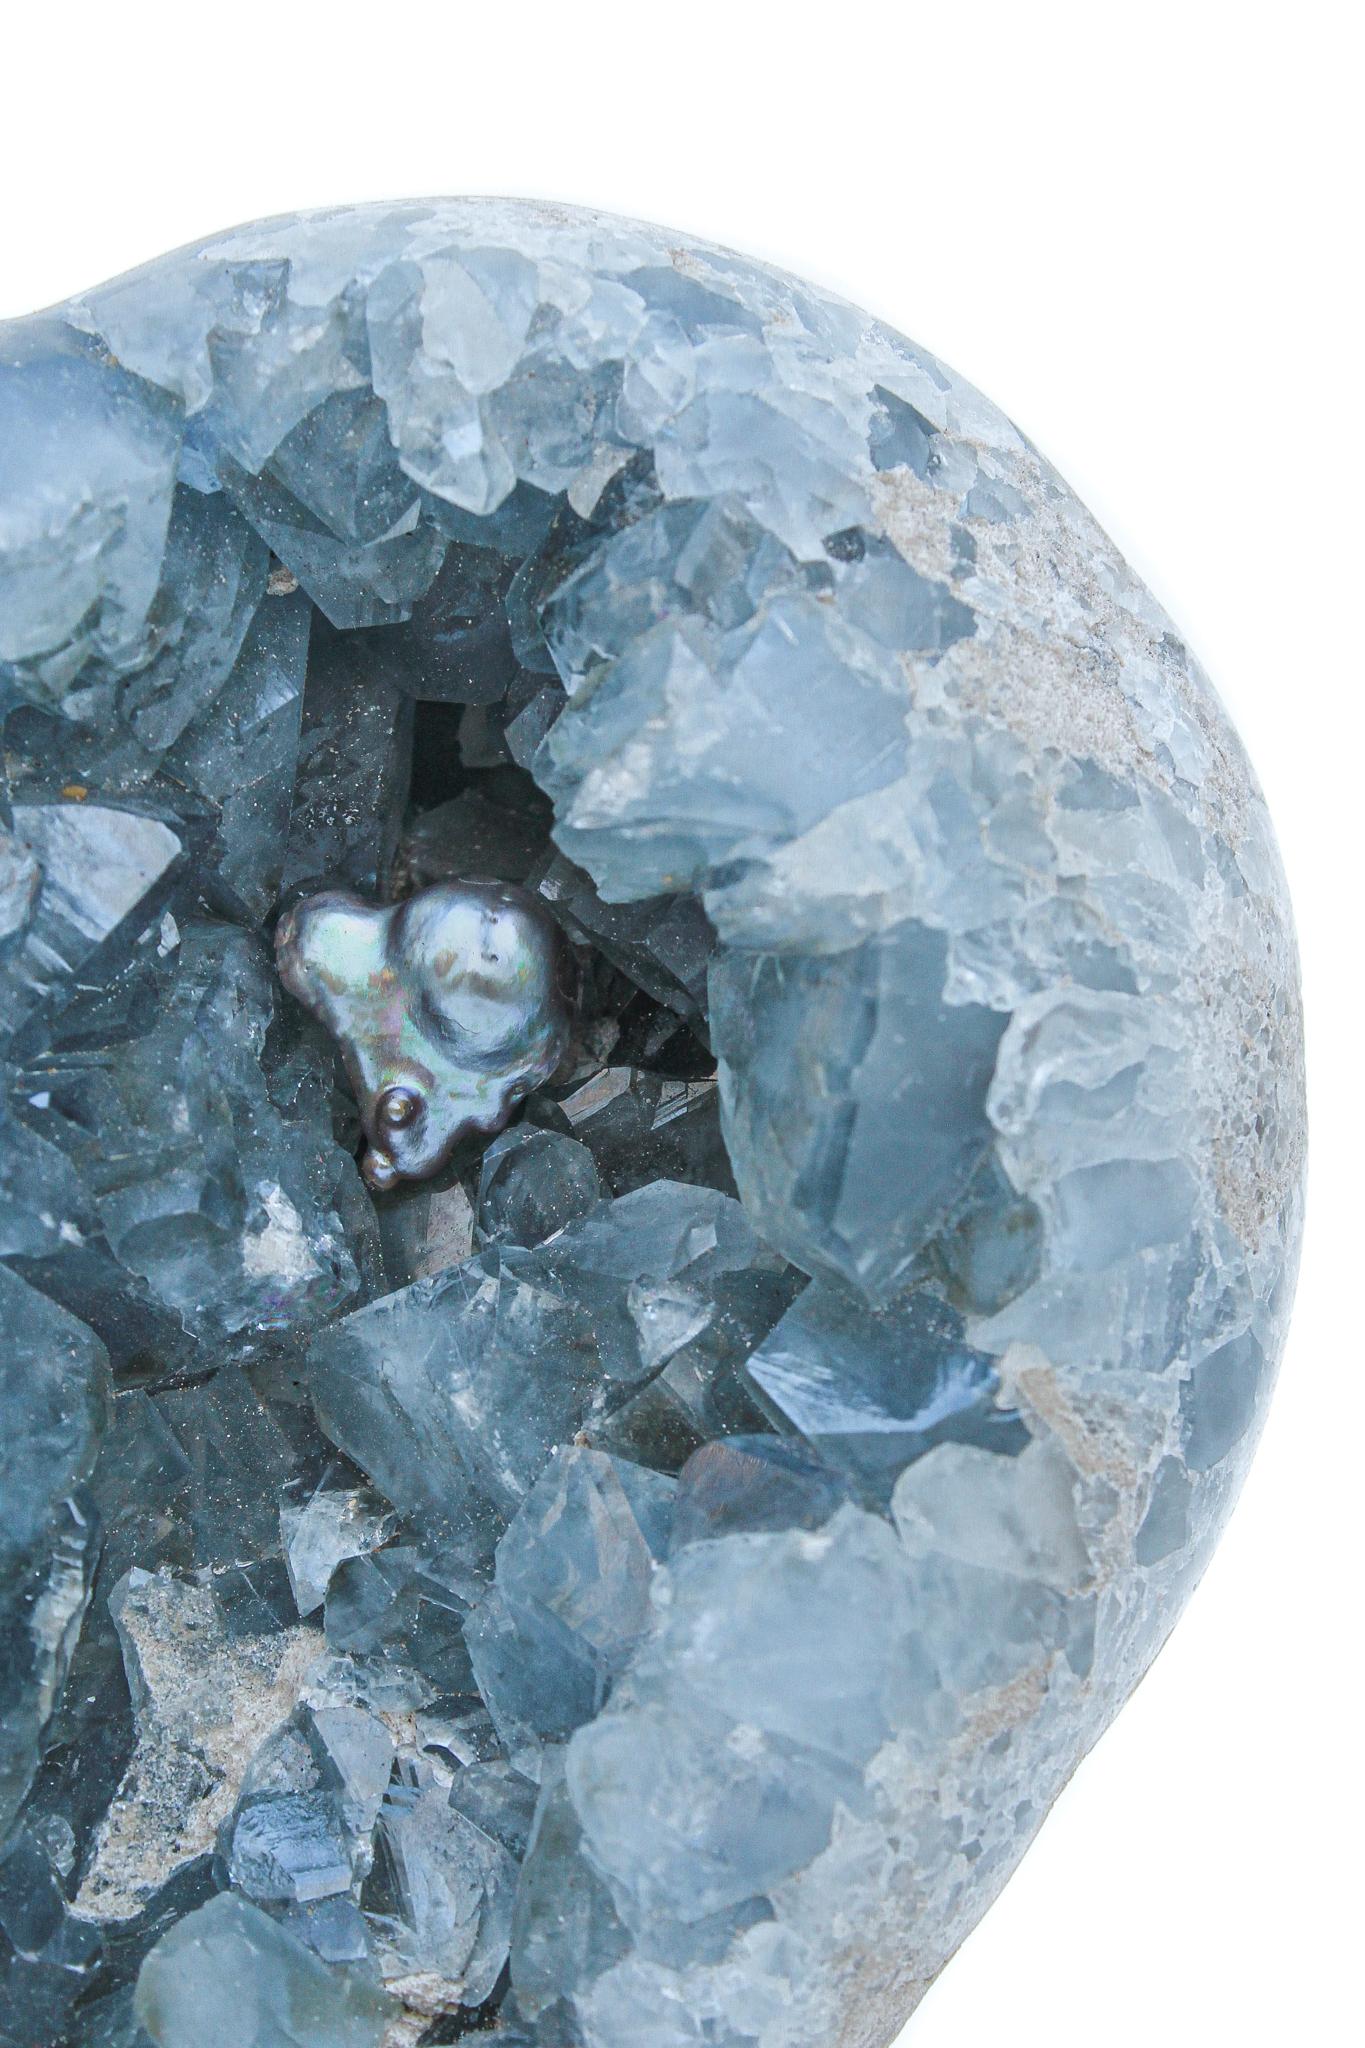 Coeur de géode céleste bleu avec une perle baroque.

Les géodes célestes se reconnaissent surtout à leur cristal de couleur bleu ciel que l'on trouve souvent en grappes. Le nom est dérivé du mot latin 